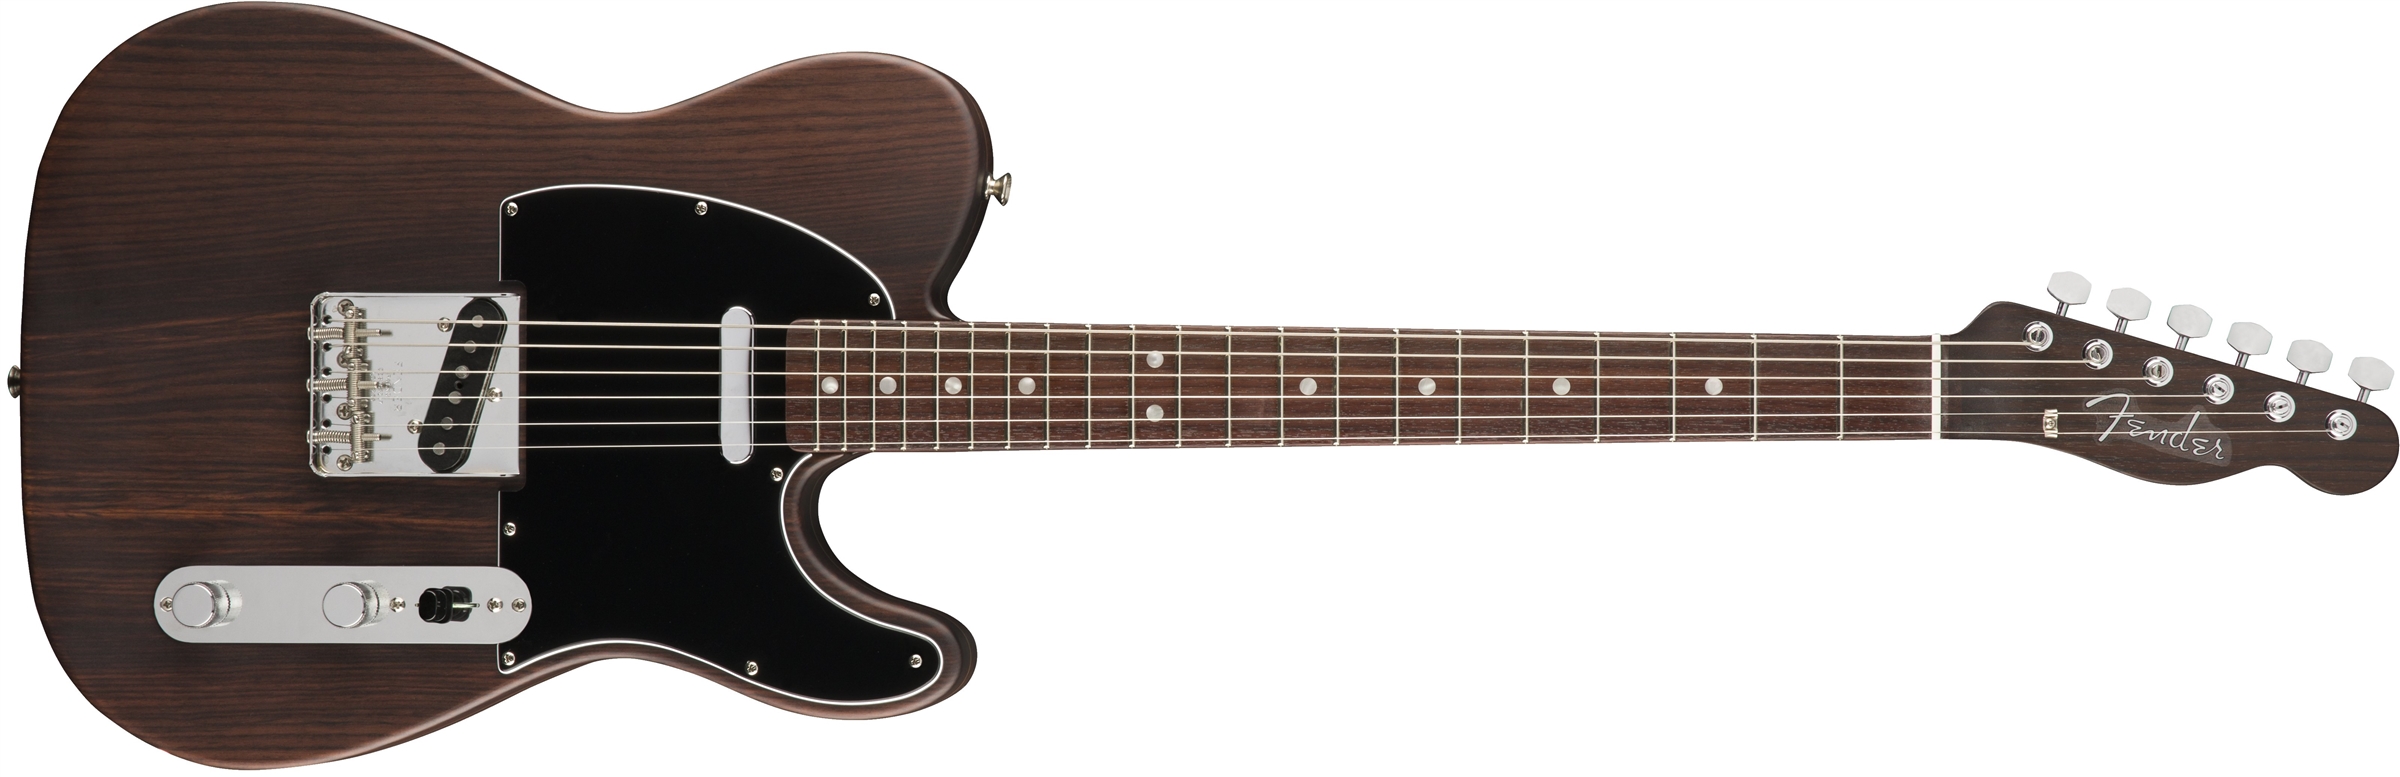 独一无二的Fender Telecaster电吉他设计，优雅且别有韵味！ - 普象网